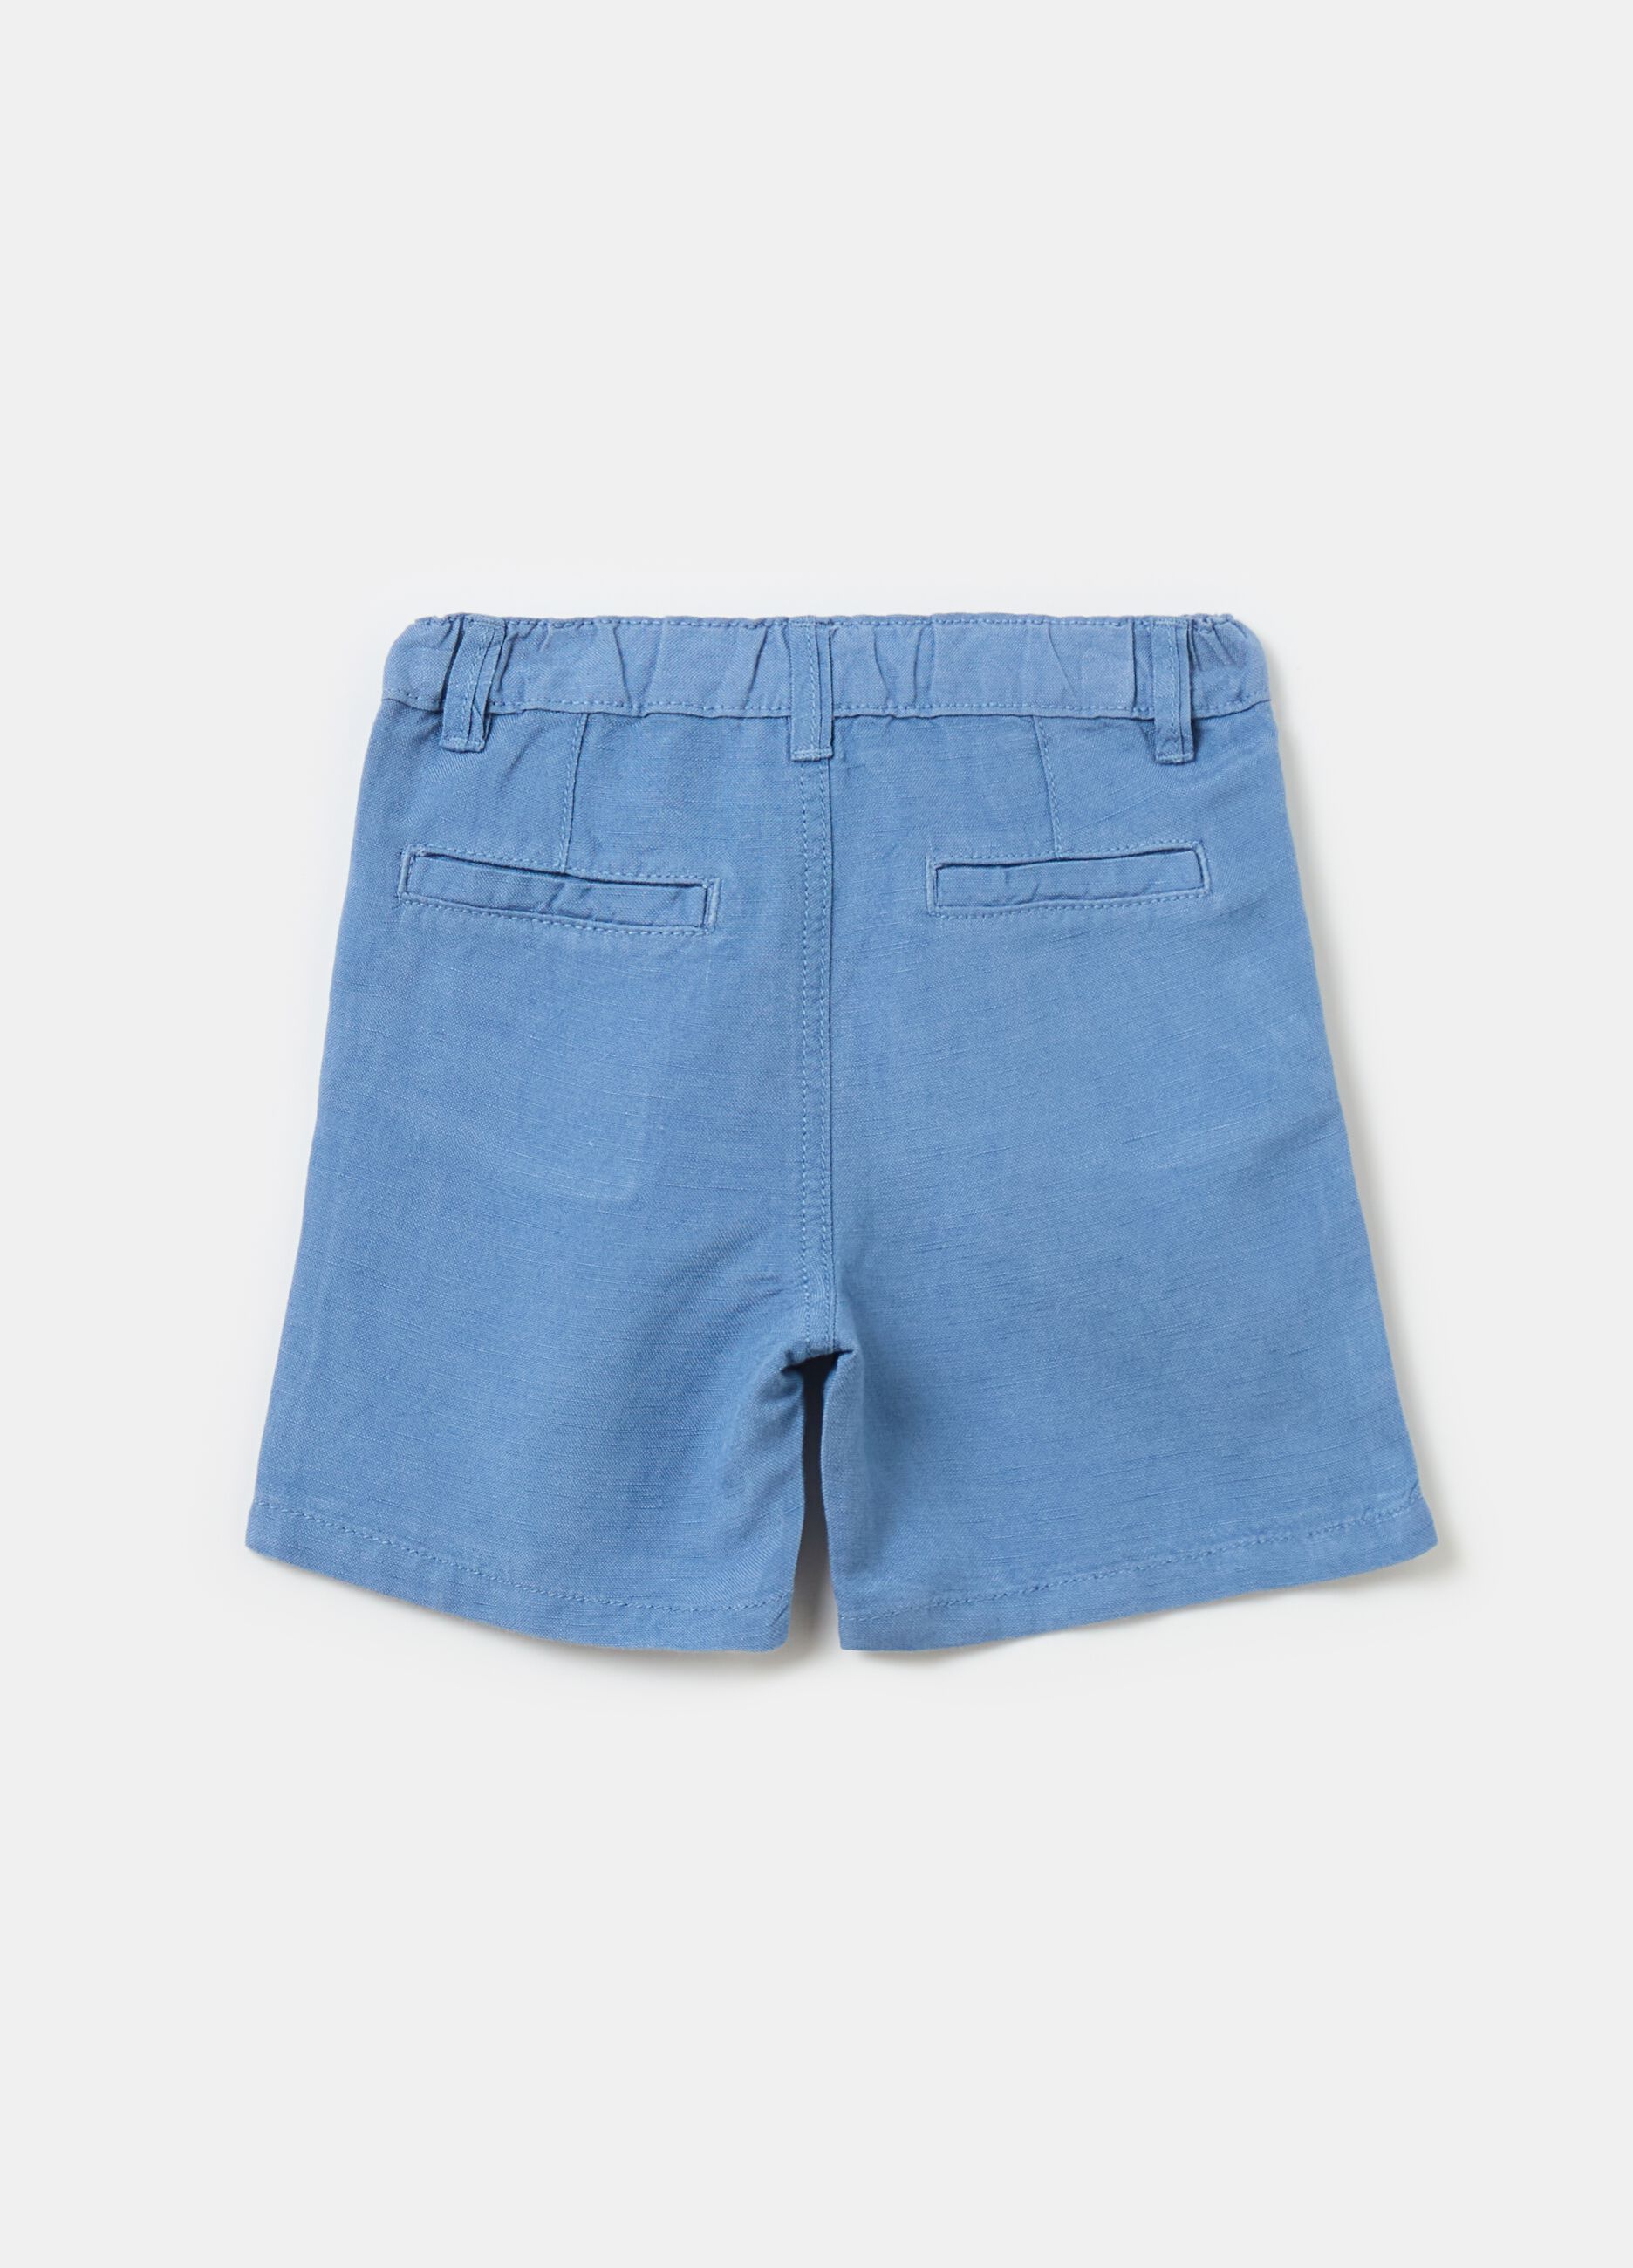 Viscose and linen Bermuda shorts with pockets